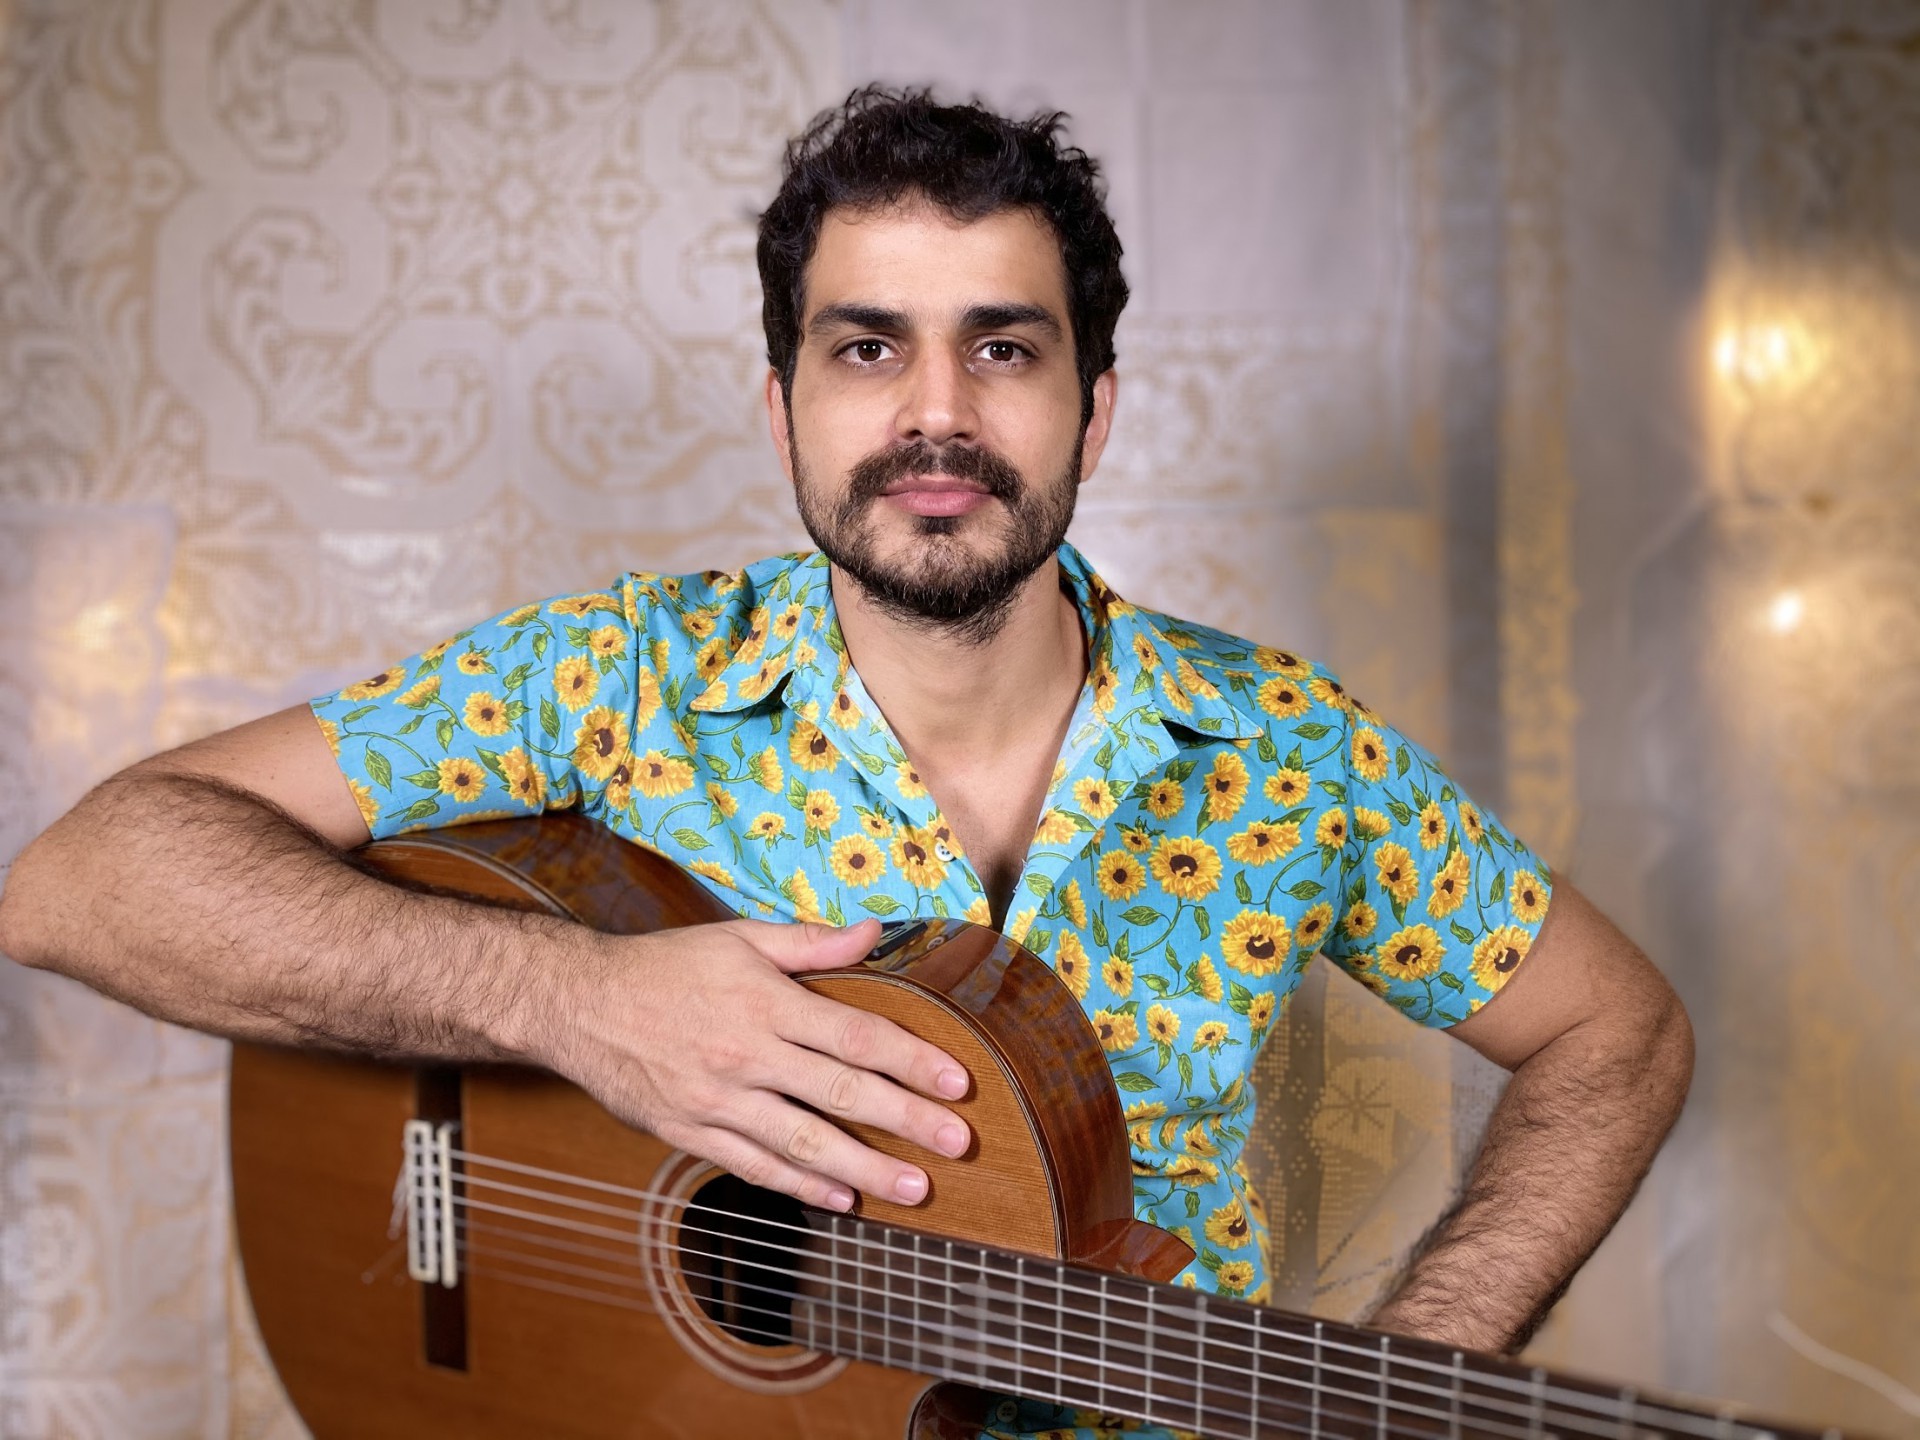 Músico Pedro Frota estreia formato virtual com o show "No Ceará se tem disso sim" (Foto: Divulgação)